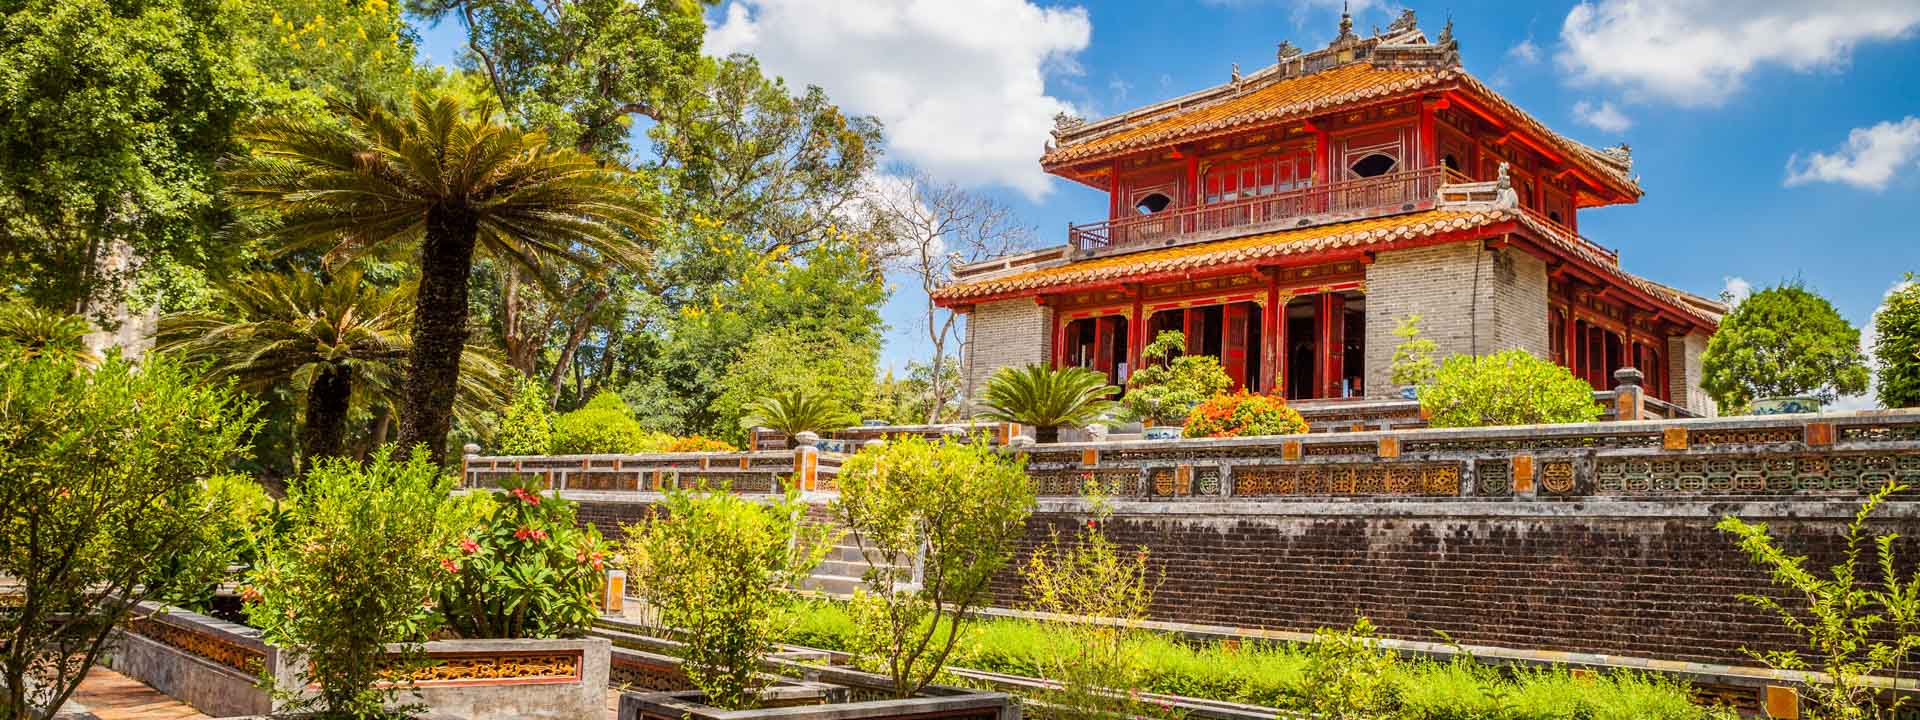 Central Vietnam world heritage sites in 4 days